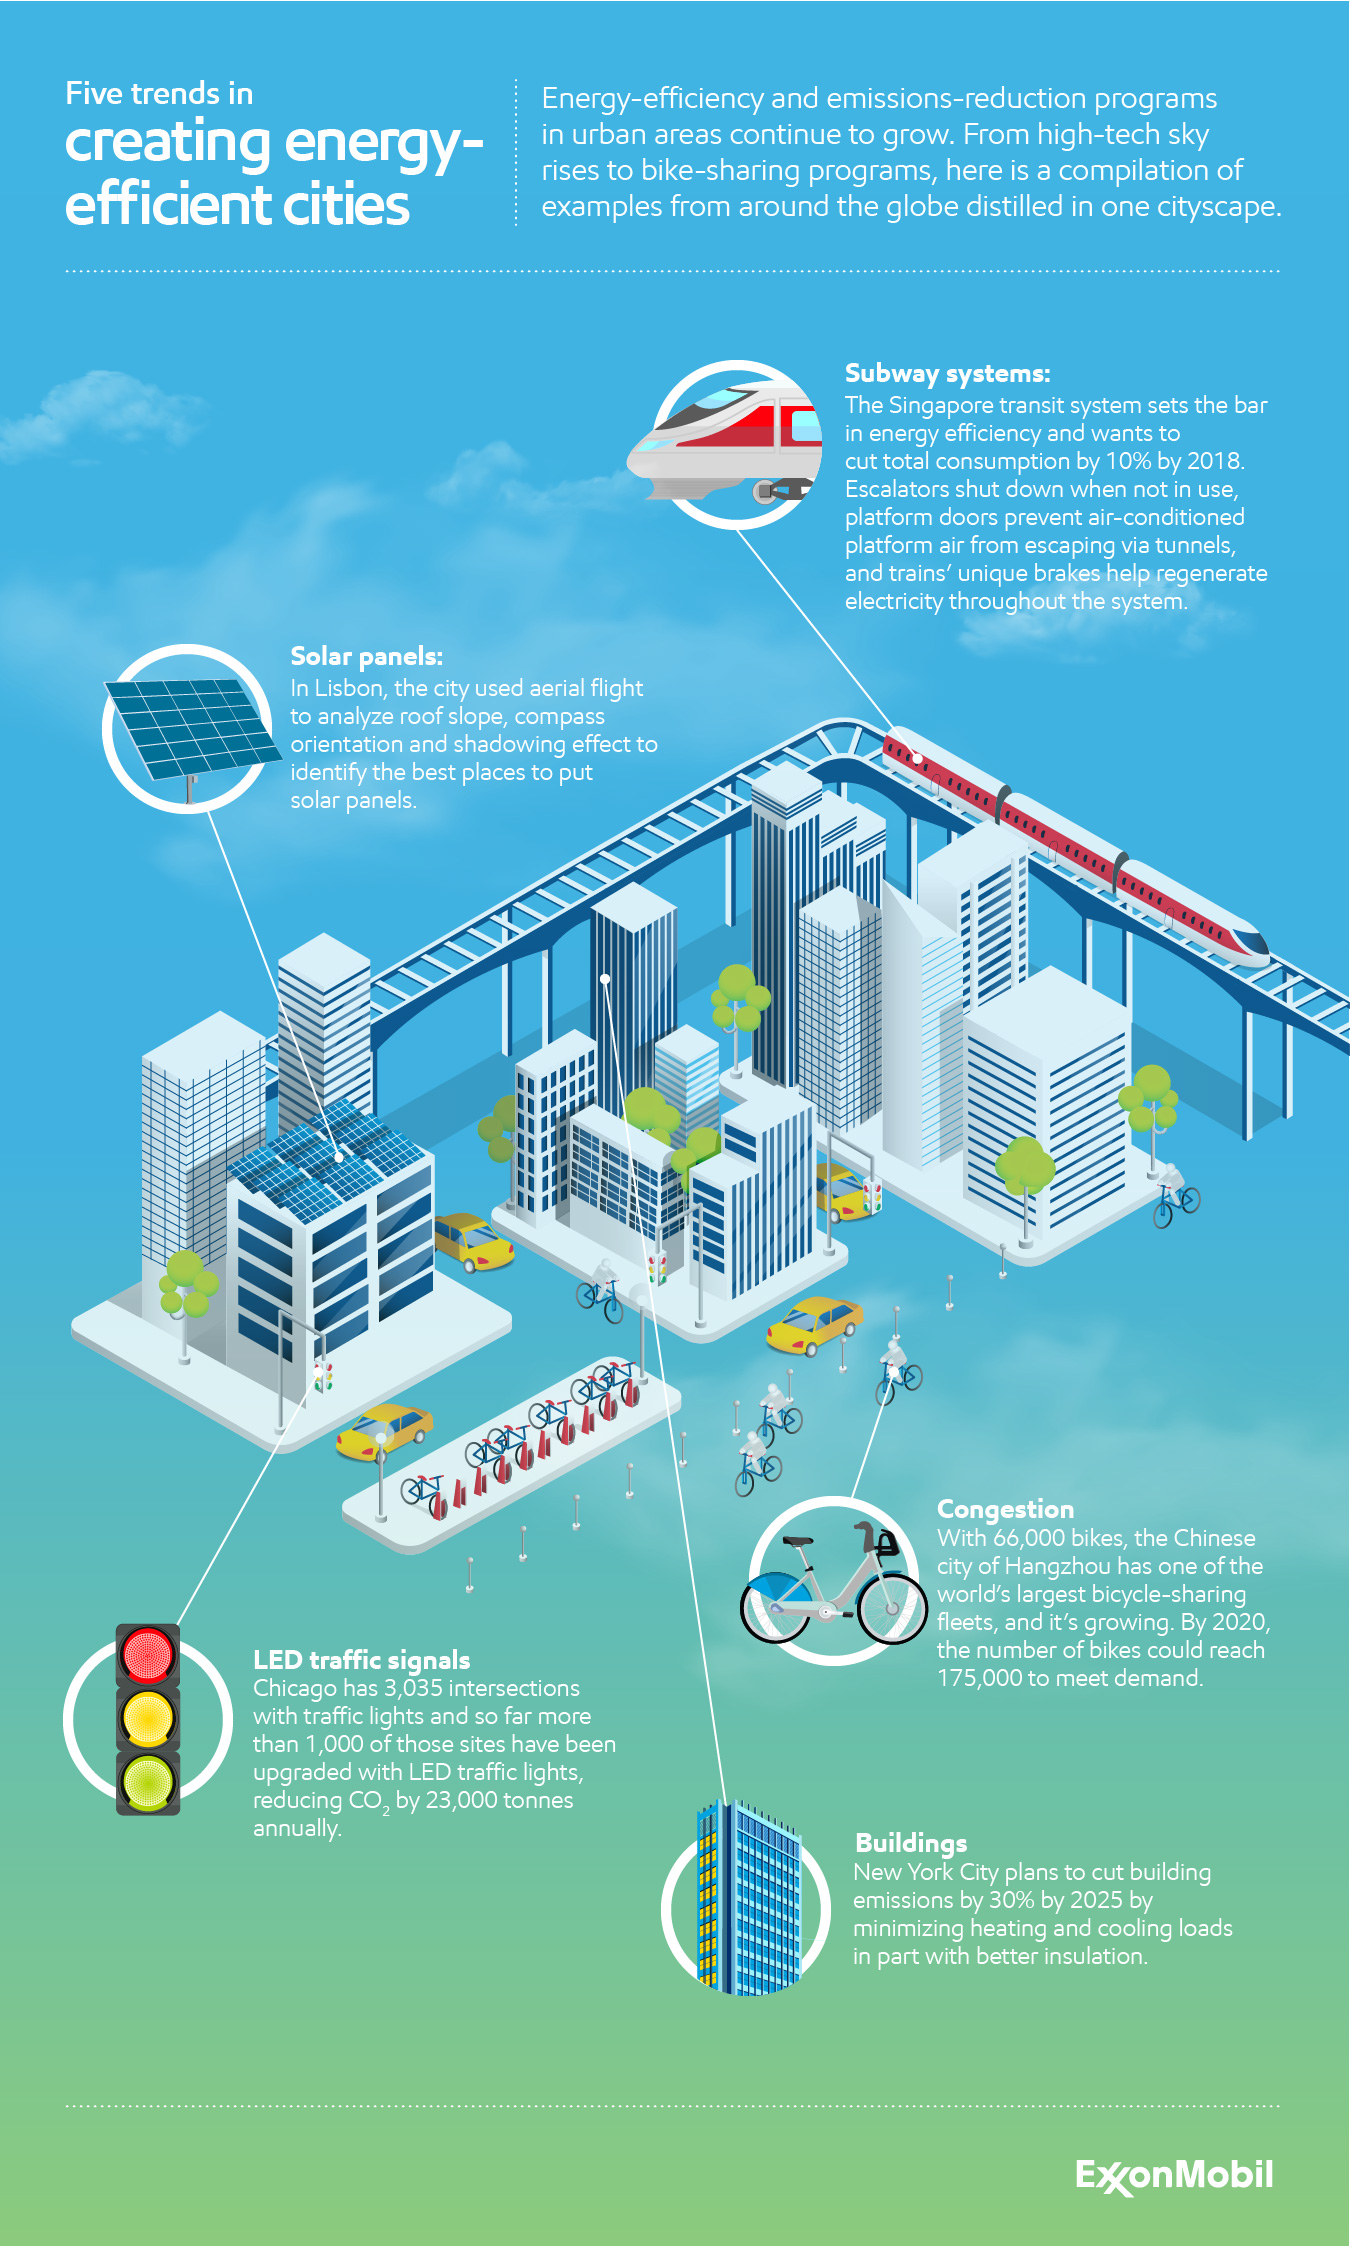 Five trends in creating energy-efficient cities